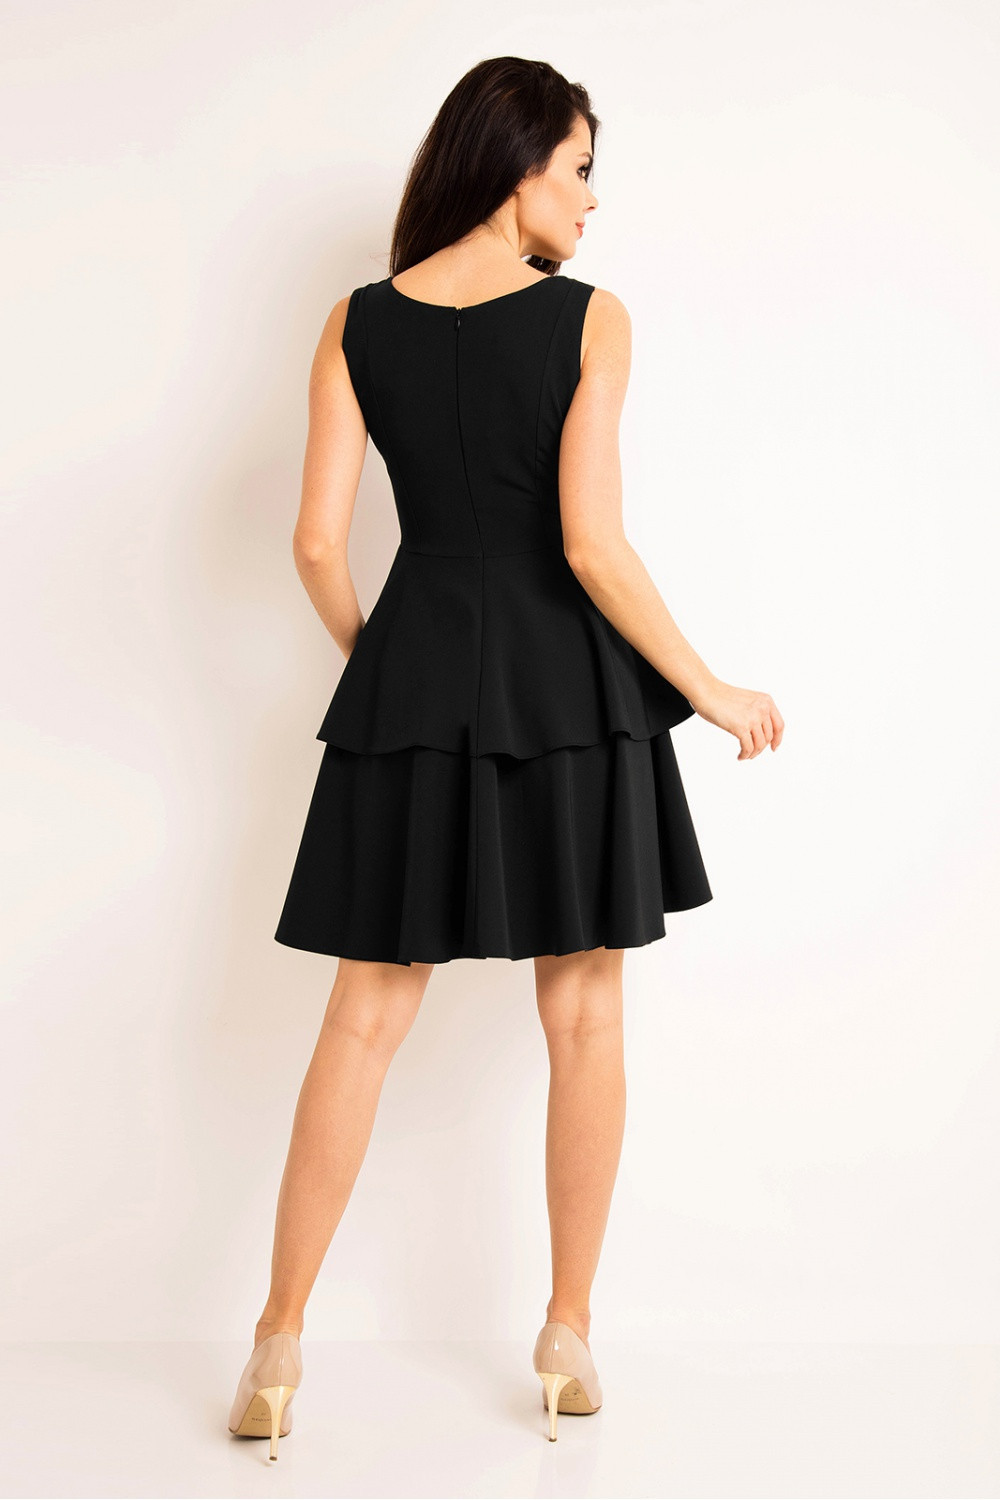 Denní dámské šaty A163 - Awama černá XL-42